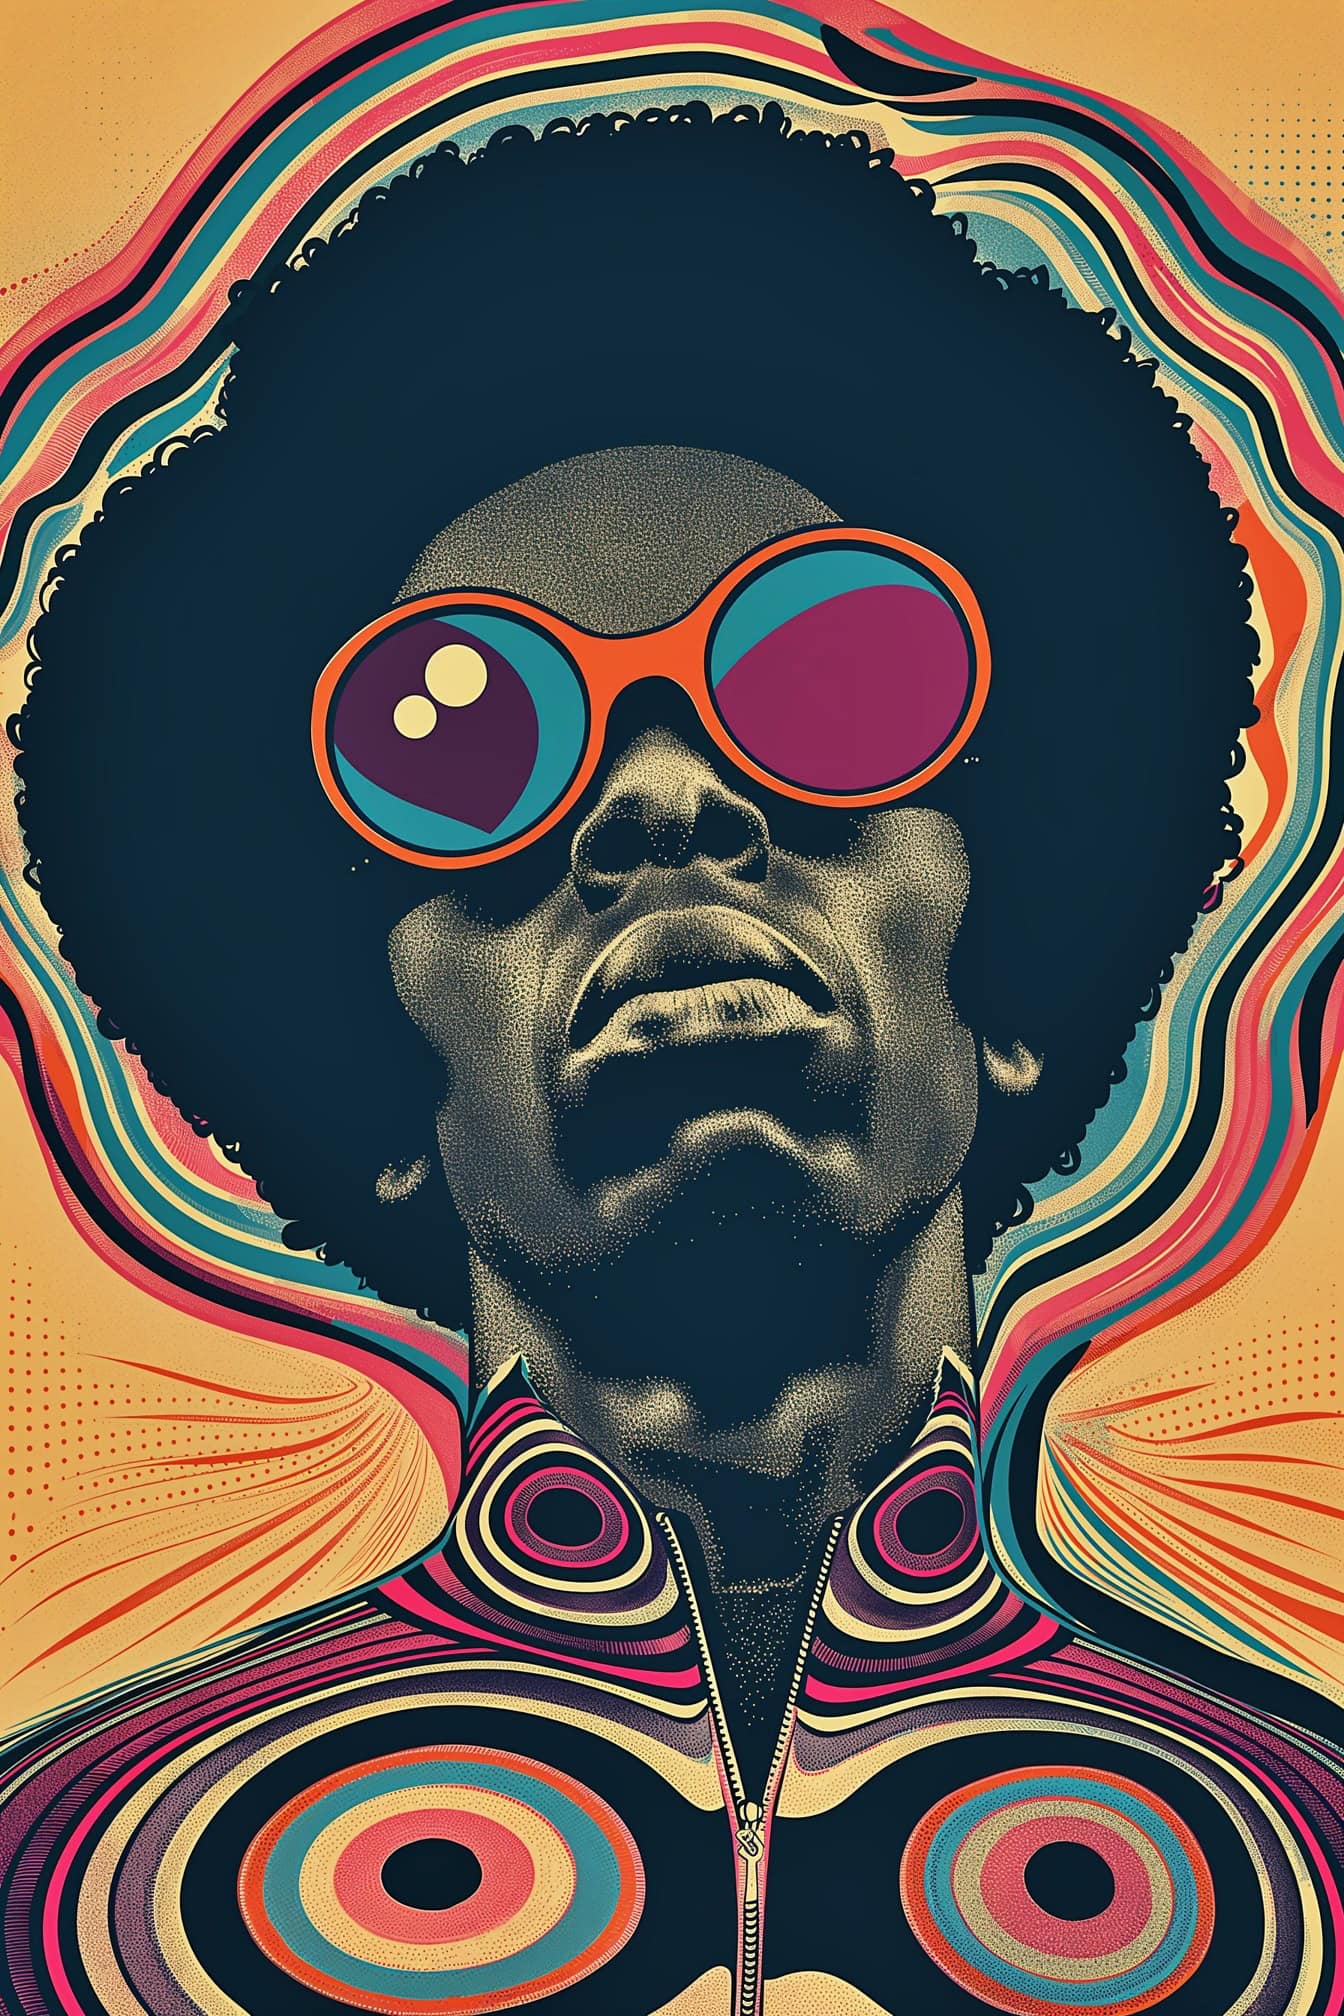 Αφίσα σε funky Afro στυλ ενός Αφροαμερικανού άνδρα που φοράει γυαλιά ηλίου και με Afro χτένισμα